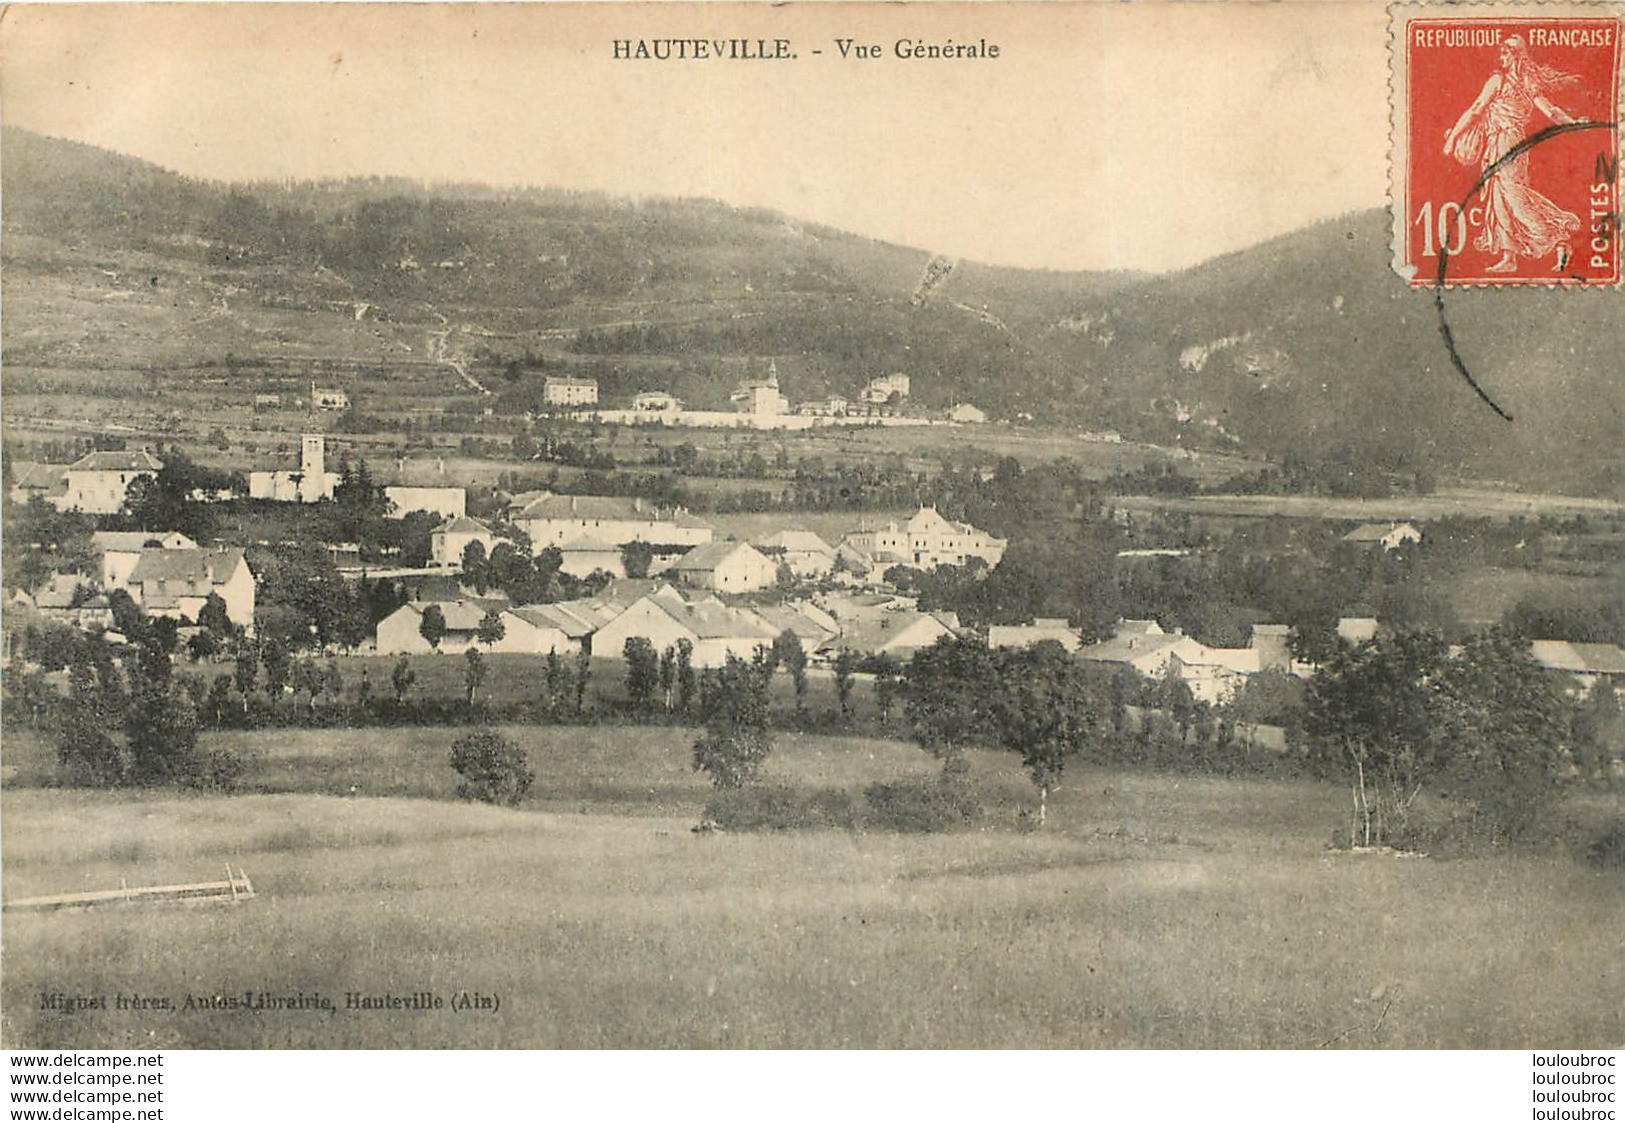 HAUTEVILLE VUE GENERALE - Hauteville-Lompnes